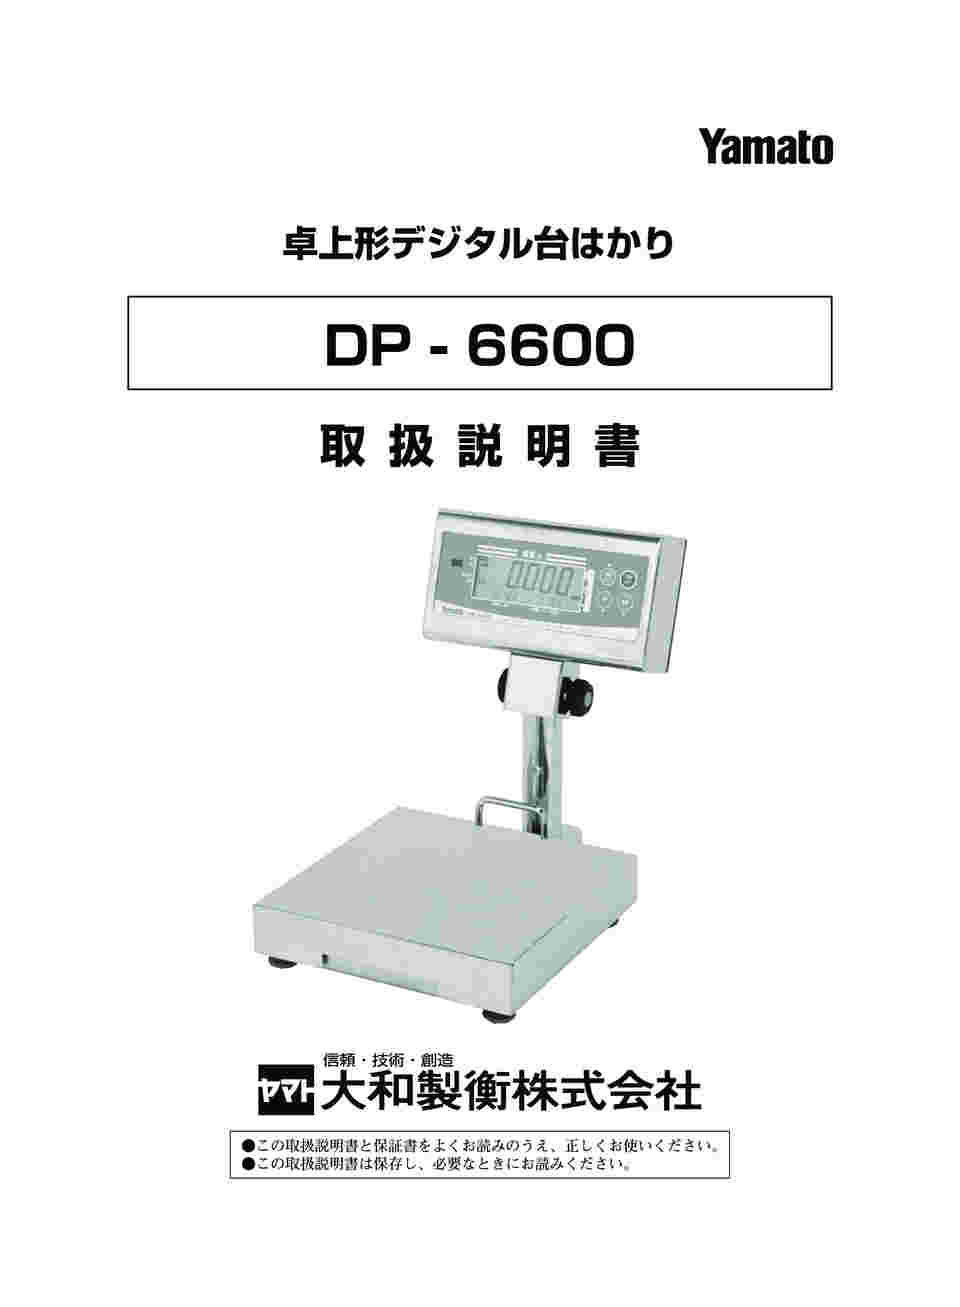 大和製衡 YAMATO デジタル台はかり 検定外品 120kg DP-6900N-120